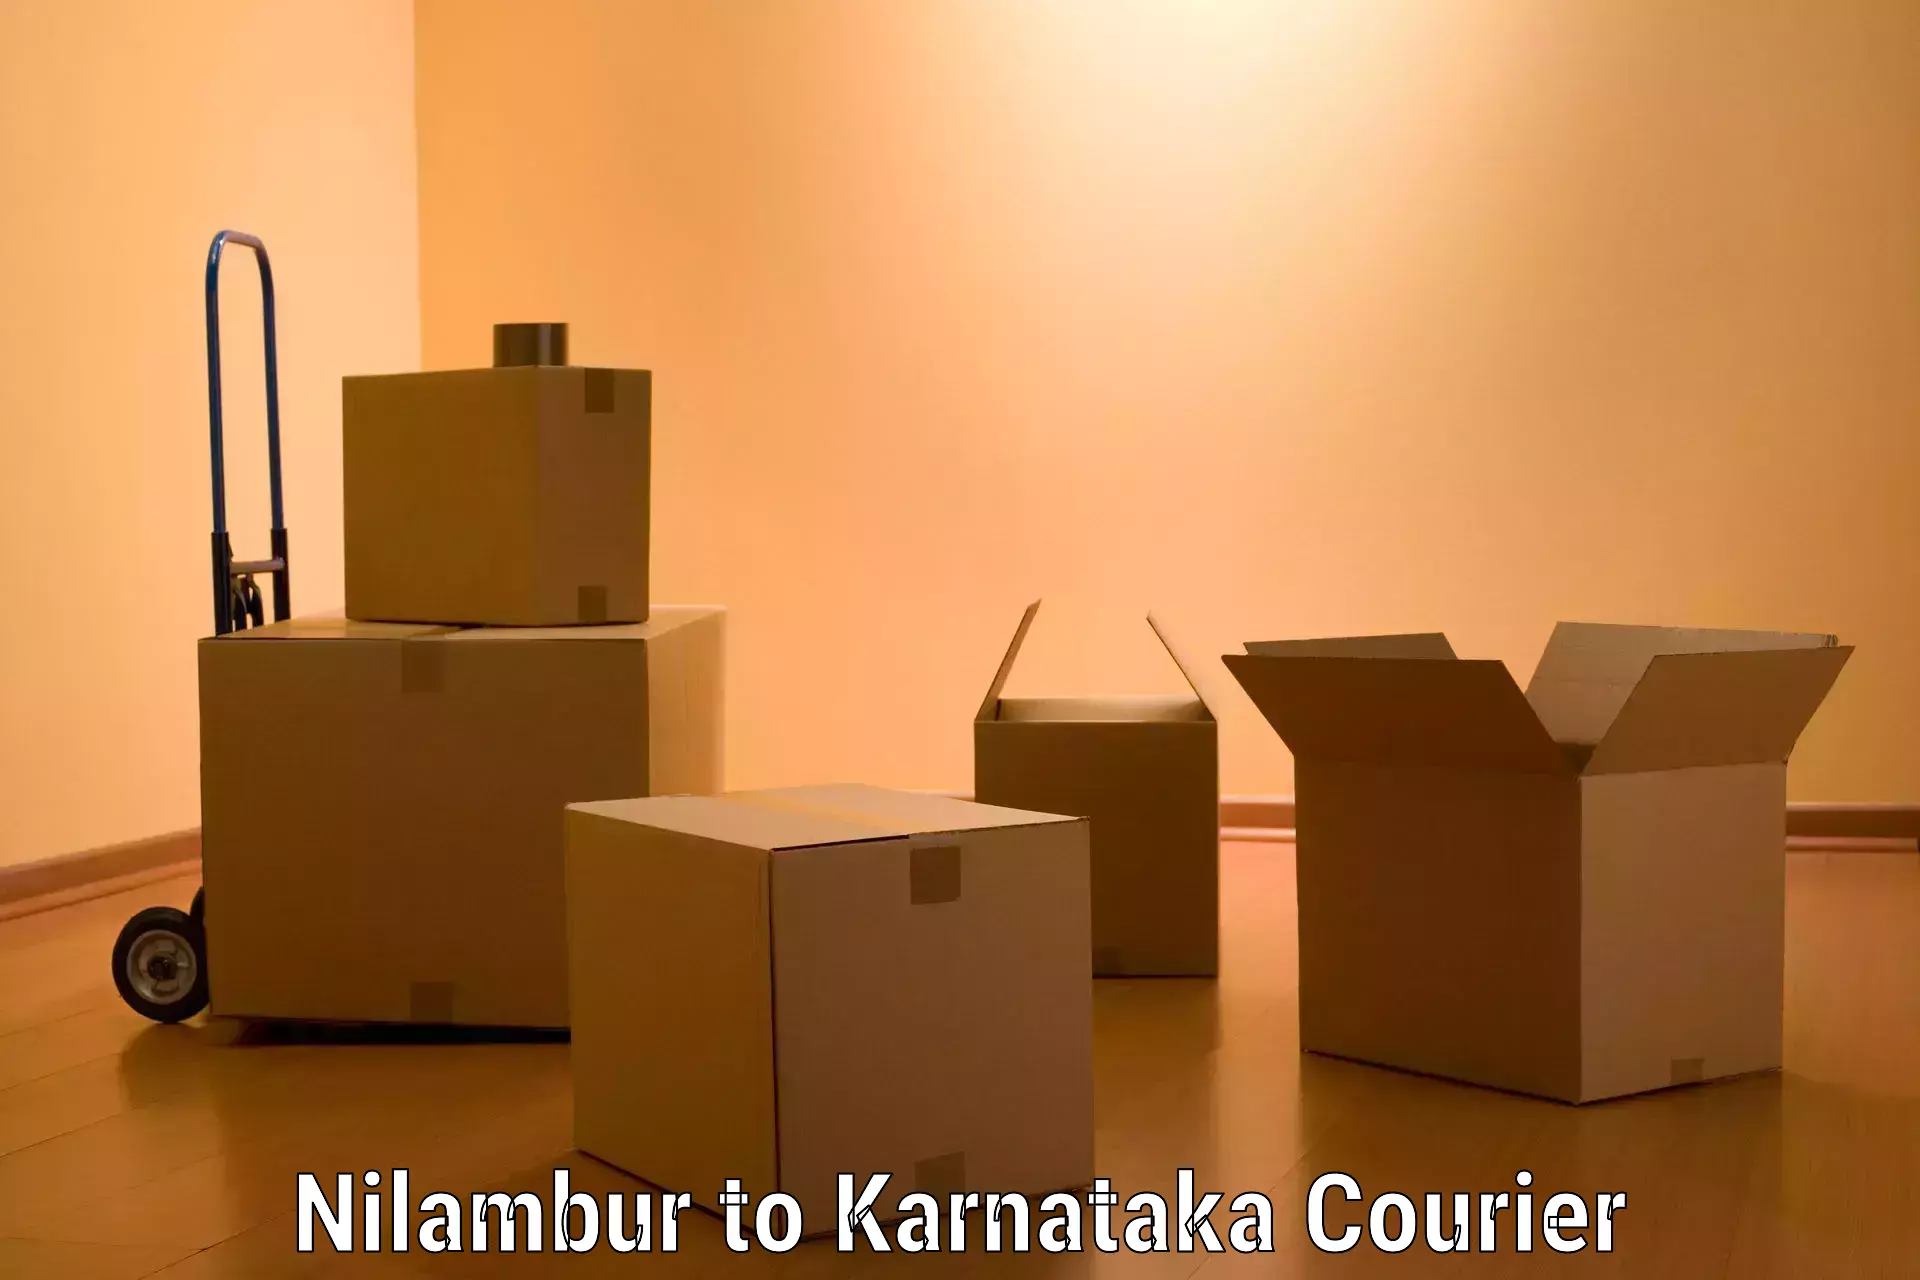 Moving and packing experts Nilambur to Karnataka